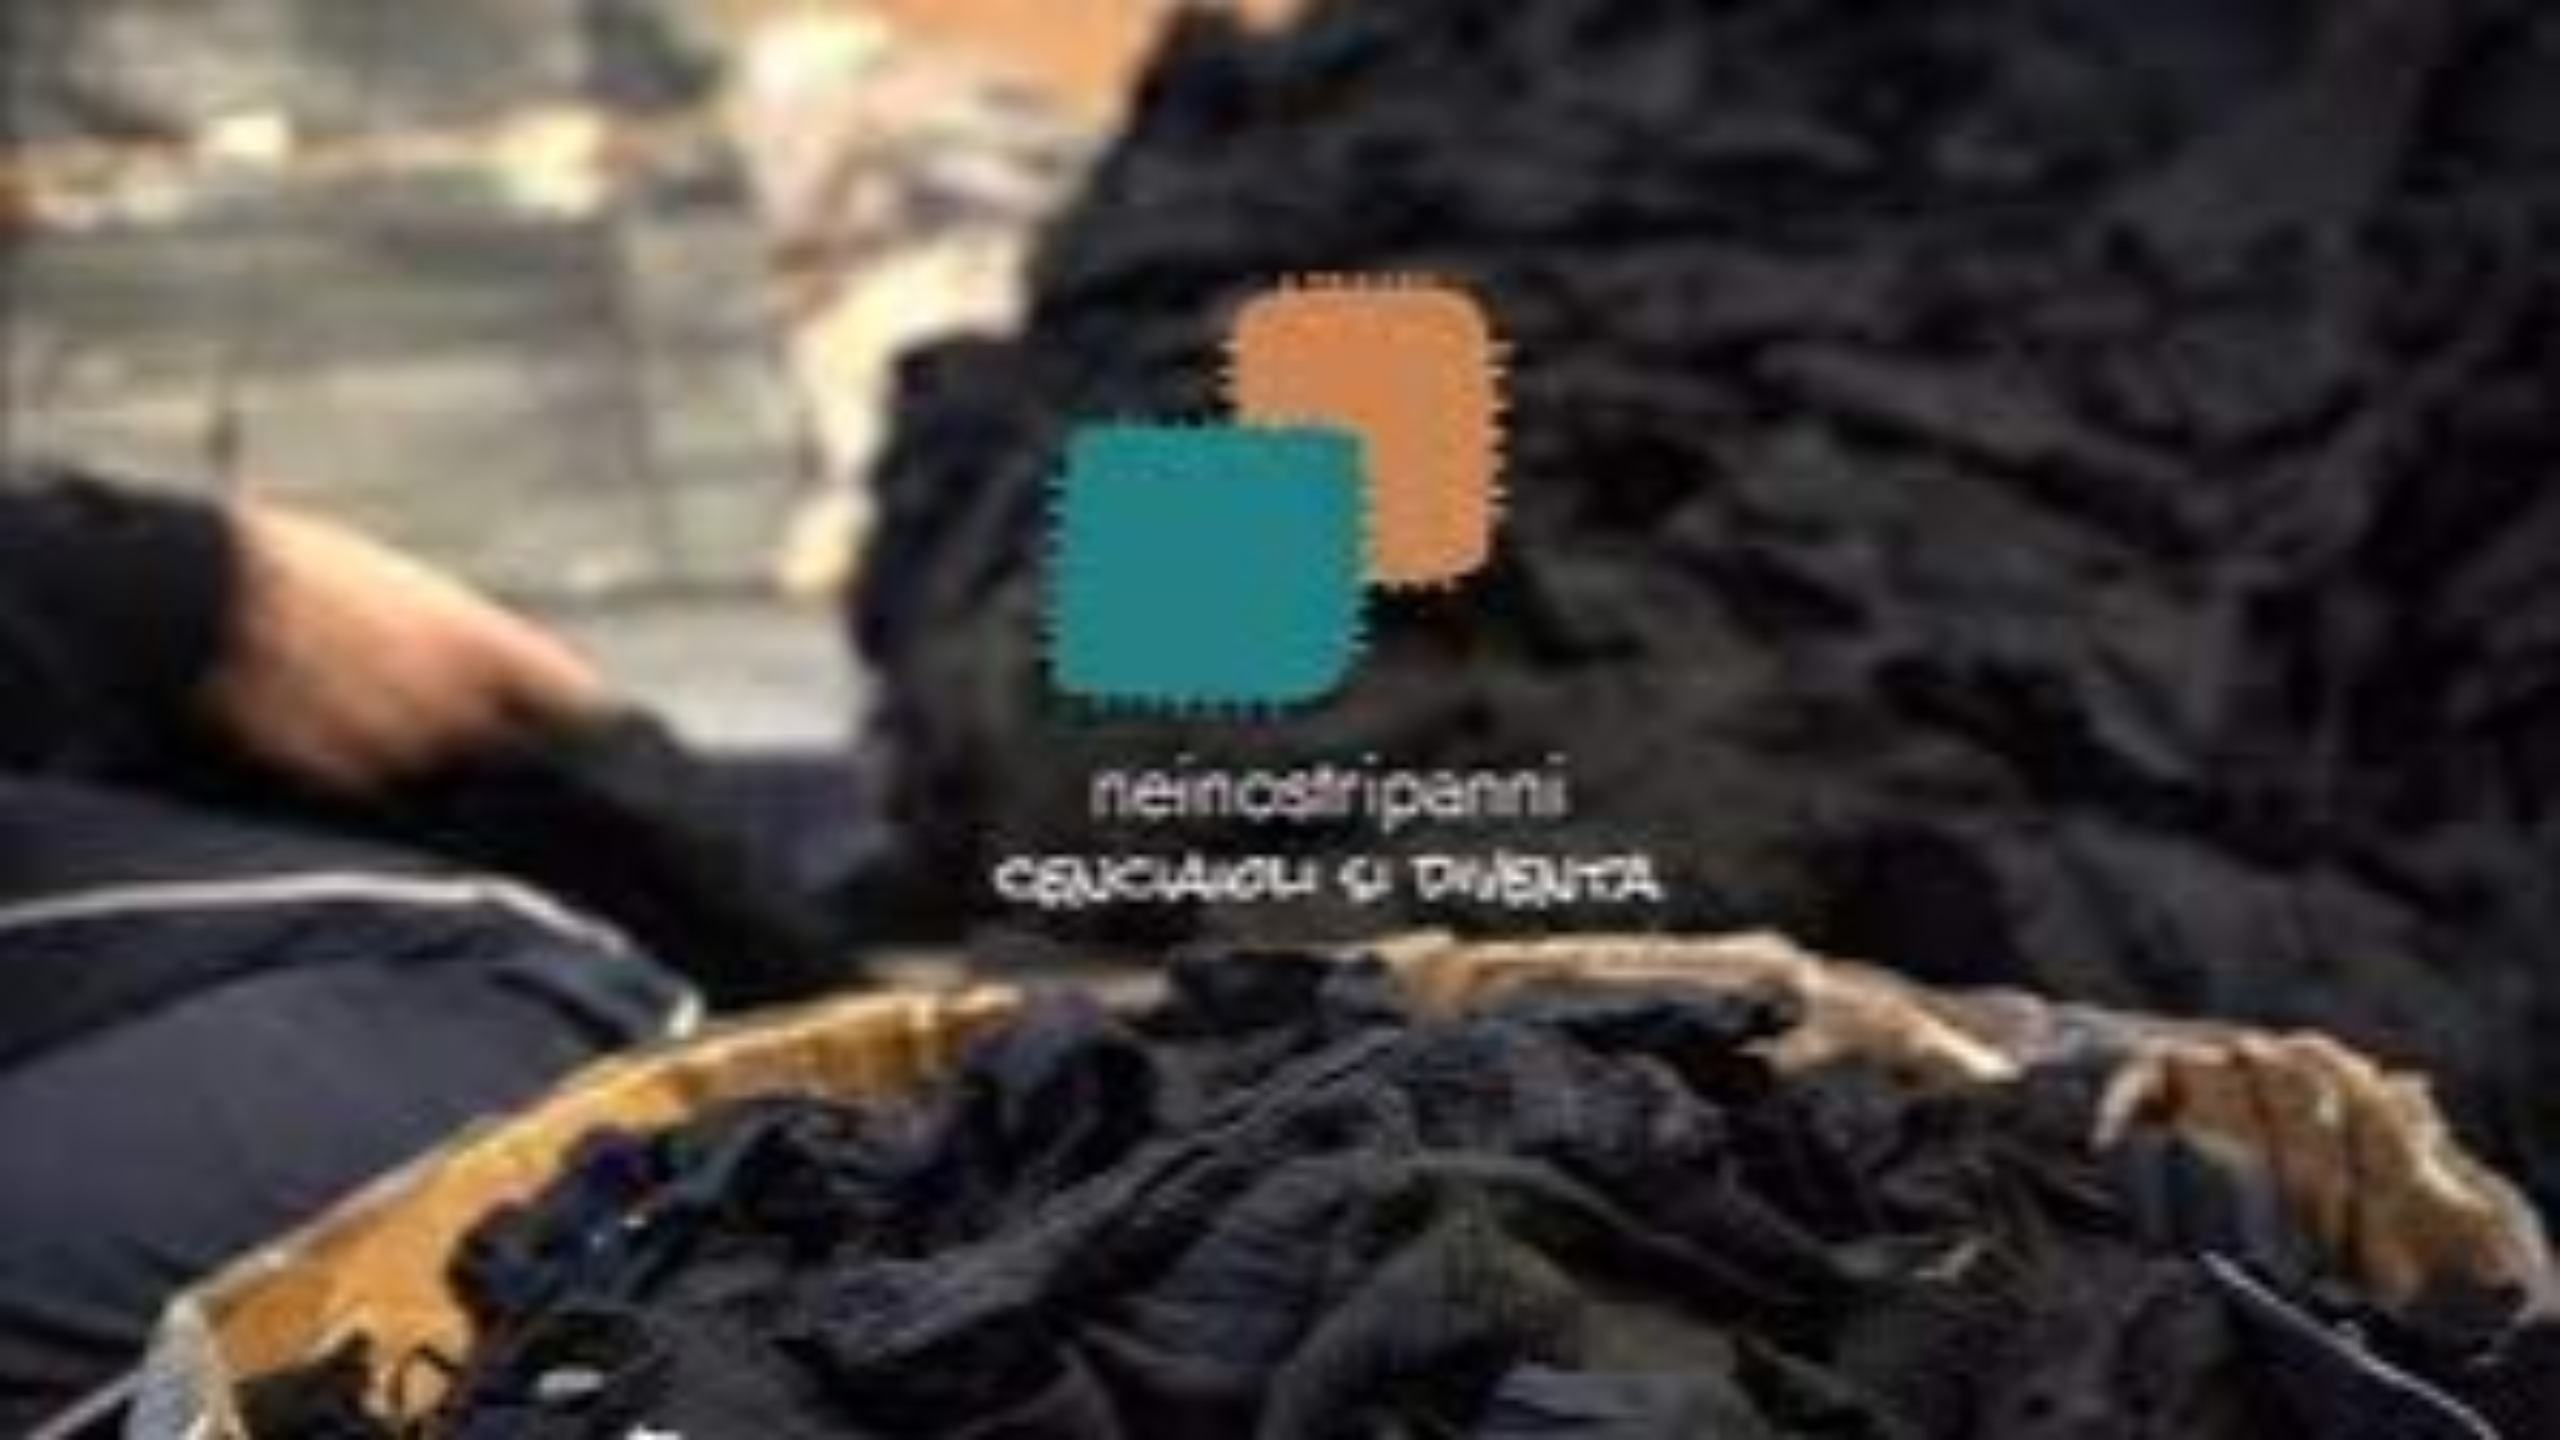 A Prato si allarga il progetto ‘Nei nostri panni’ anche al settore della filatura